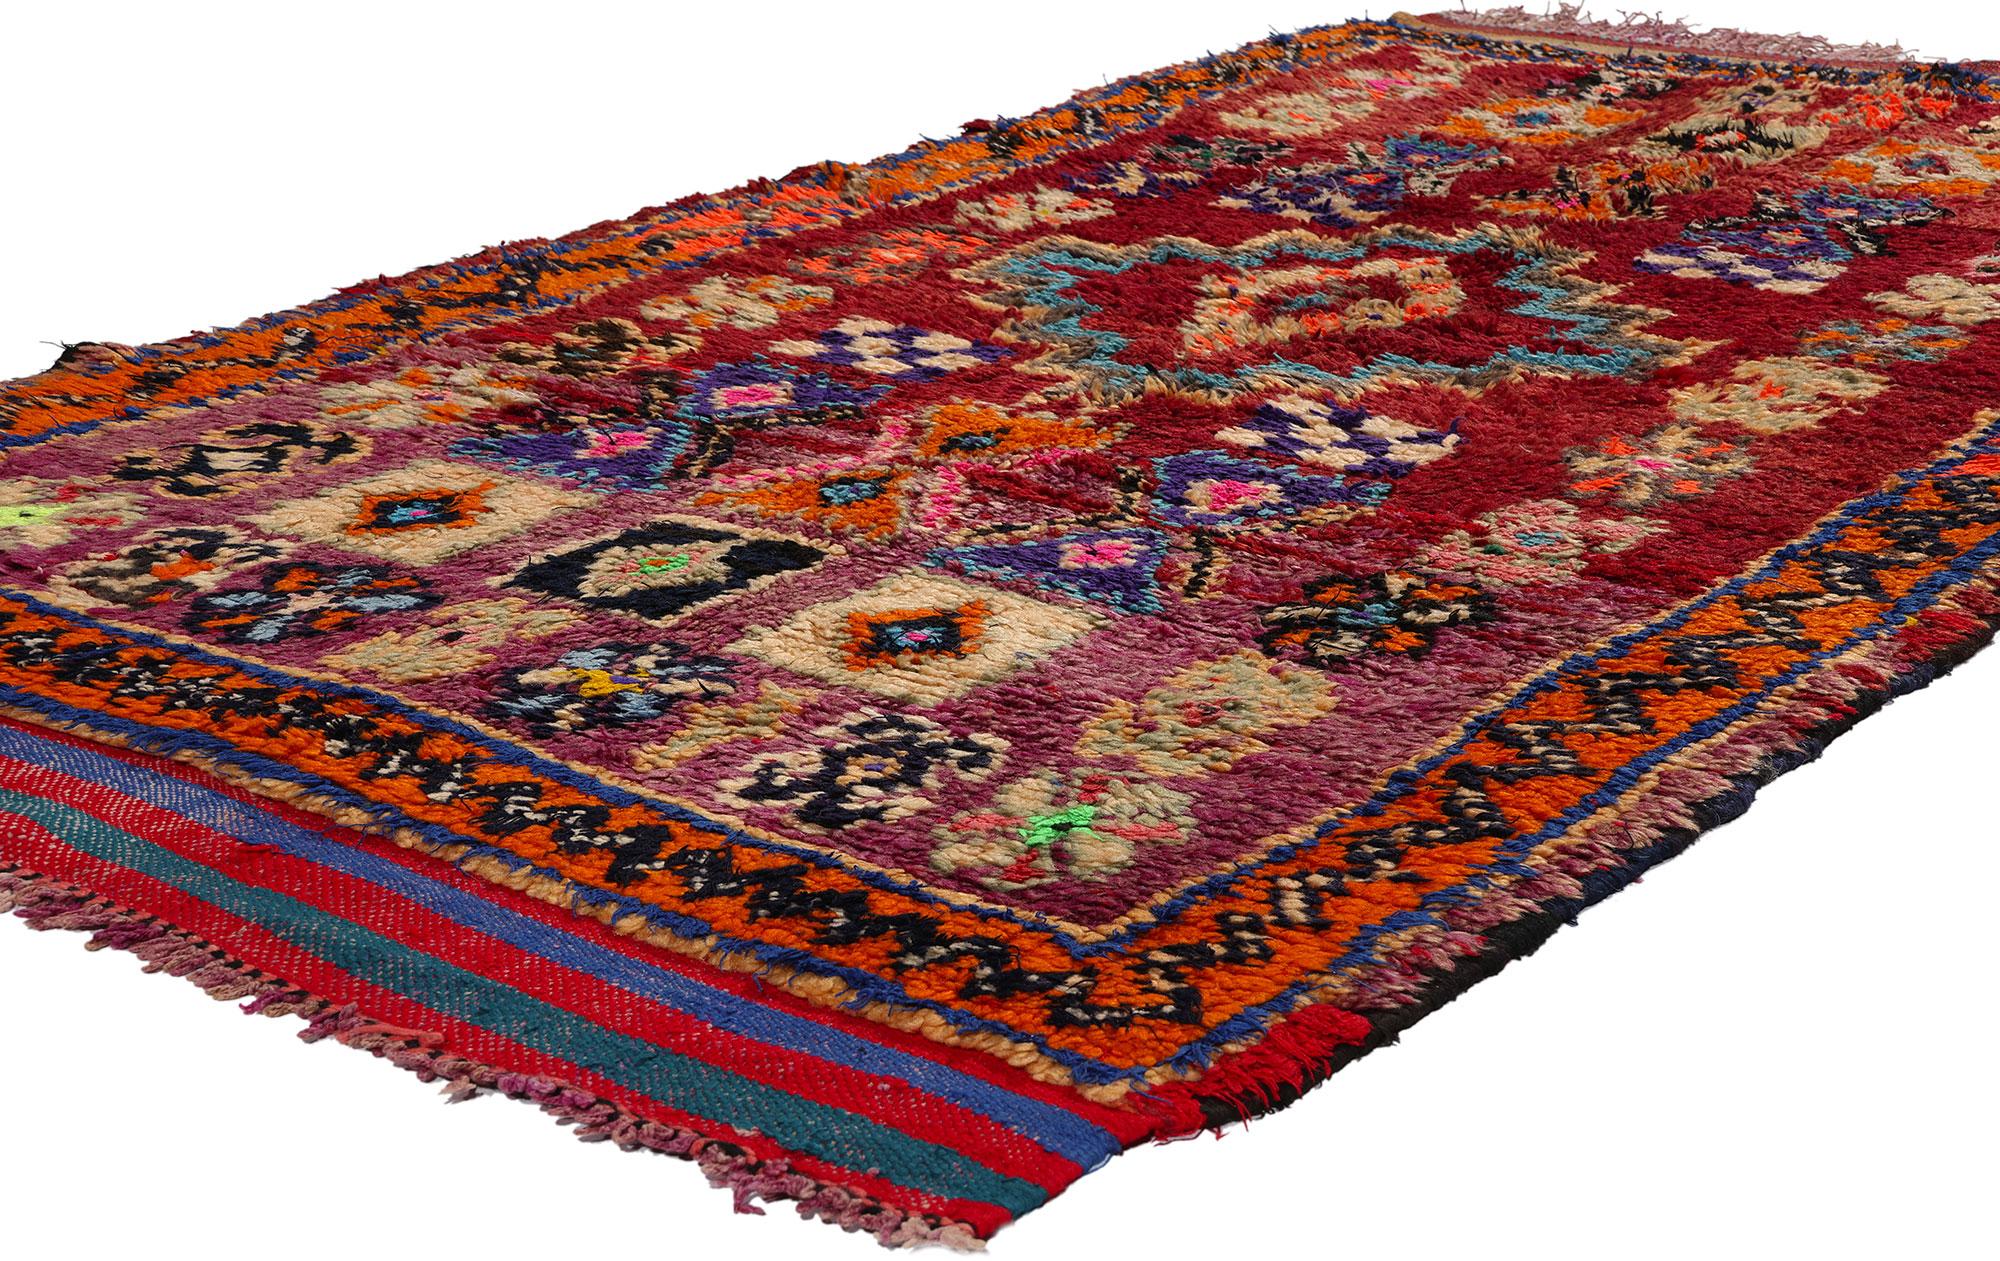 21780 Vintage Rot Talsint Marokkanischer Teppich 03'10 x 07'09. Lassen Sie sich von der betörenden Kunstfertigkeit dieses handgeknüpften marokkanischen Talsint-Teppichs aus roter Wolle verzaubern, der seine Geschichte in der mystischen Region Figuig